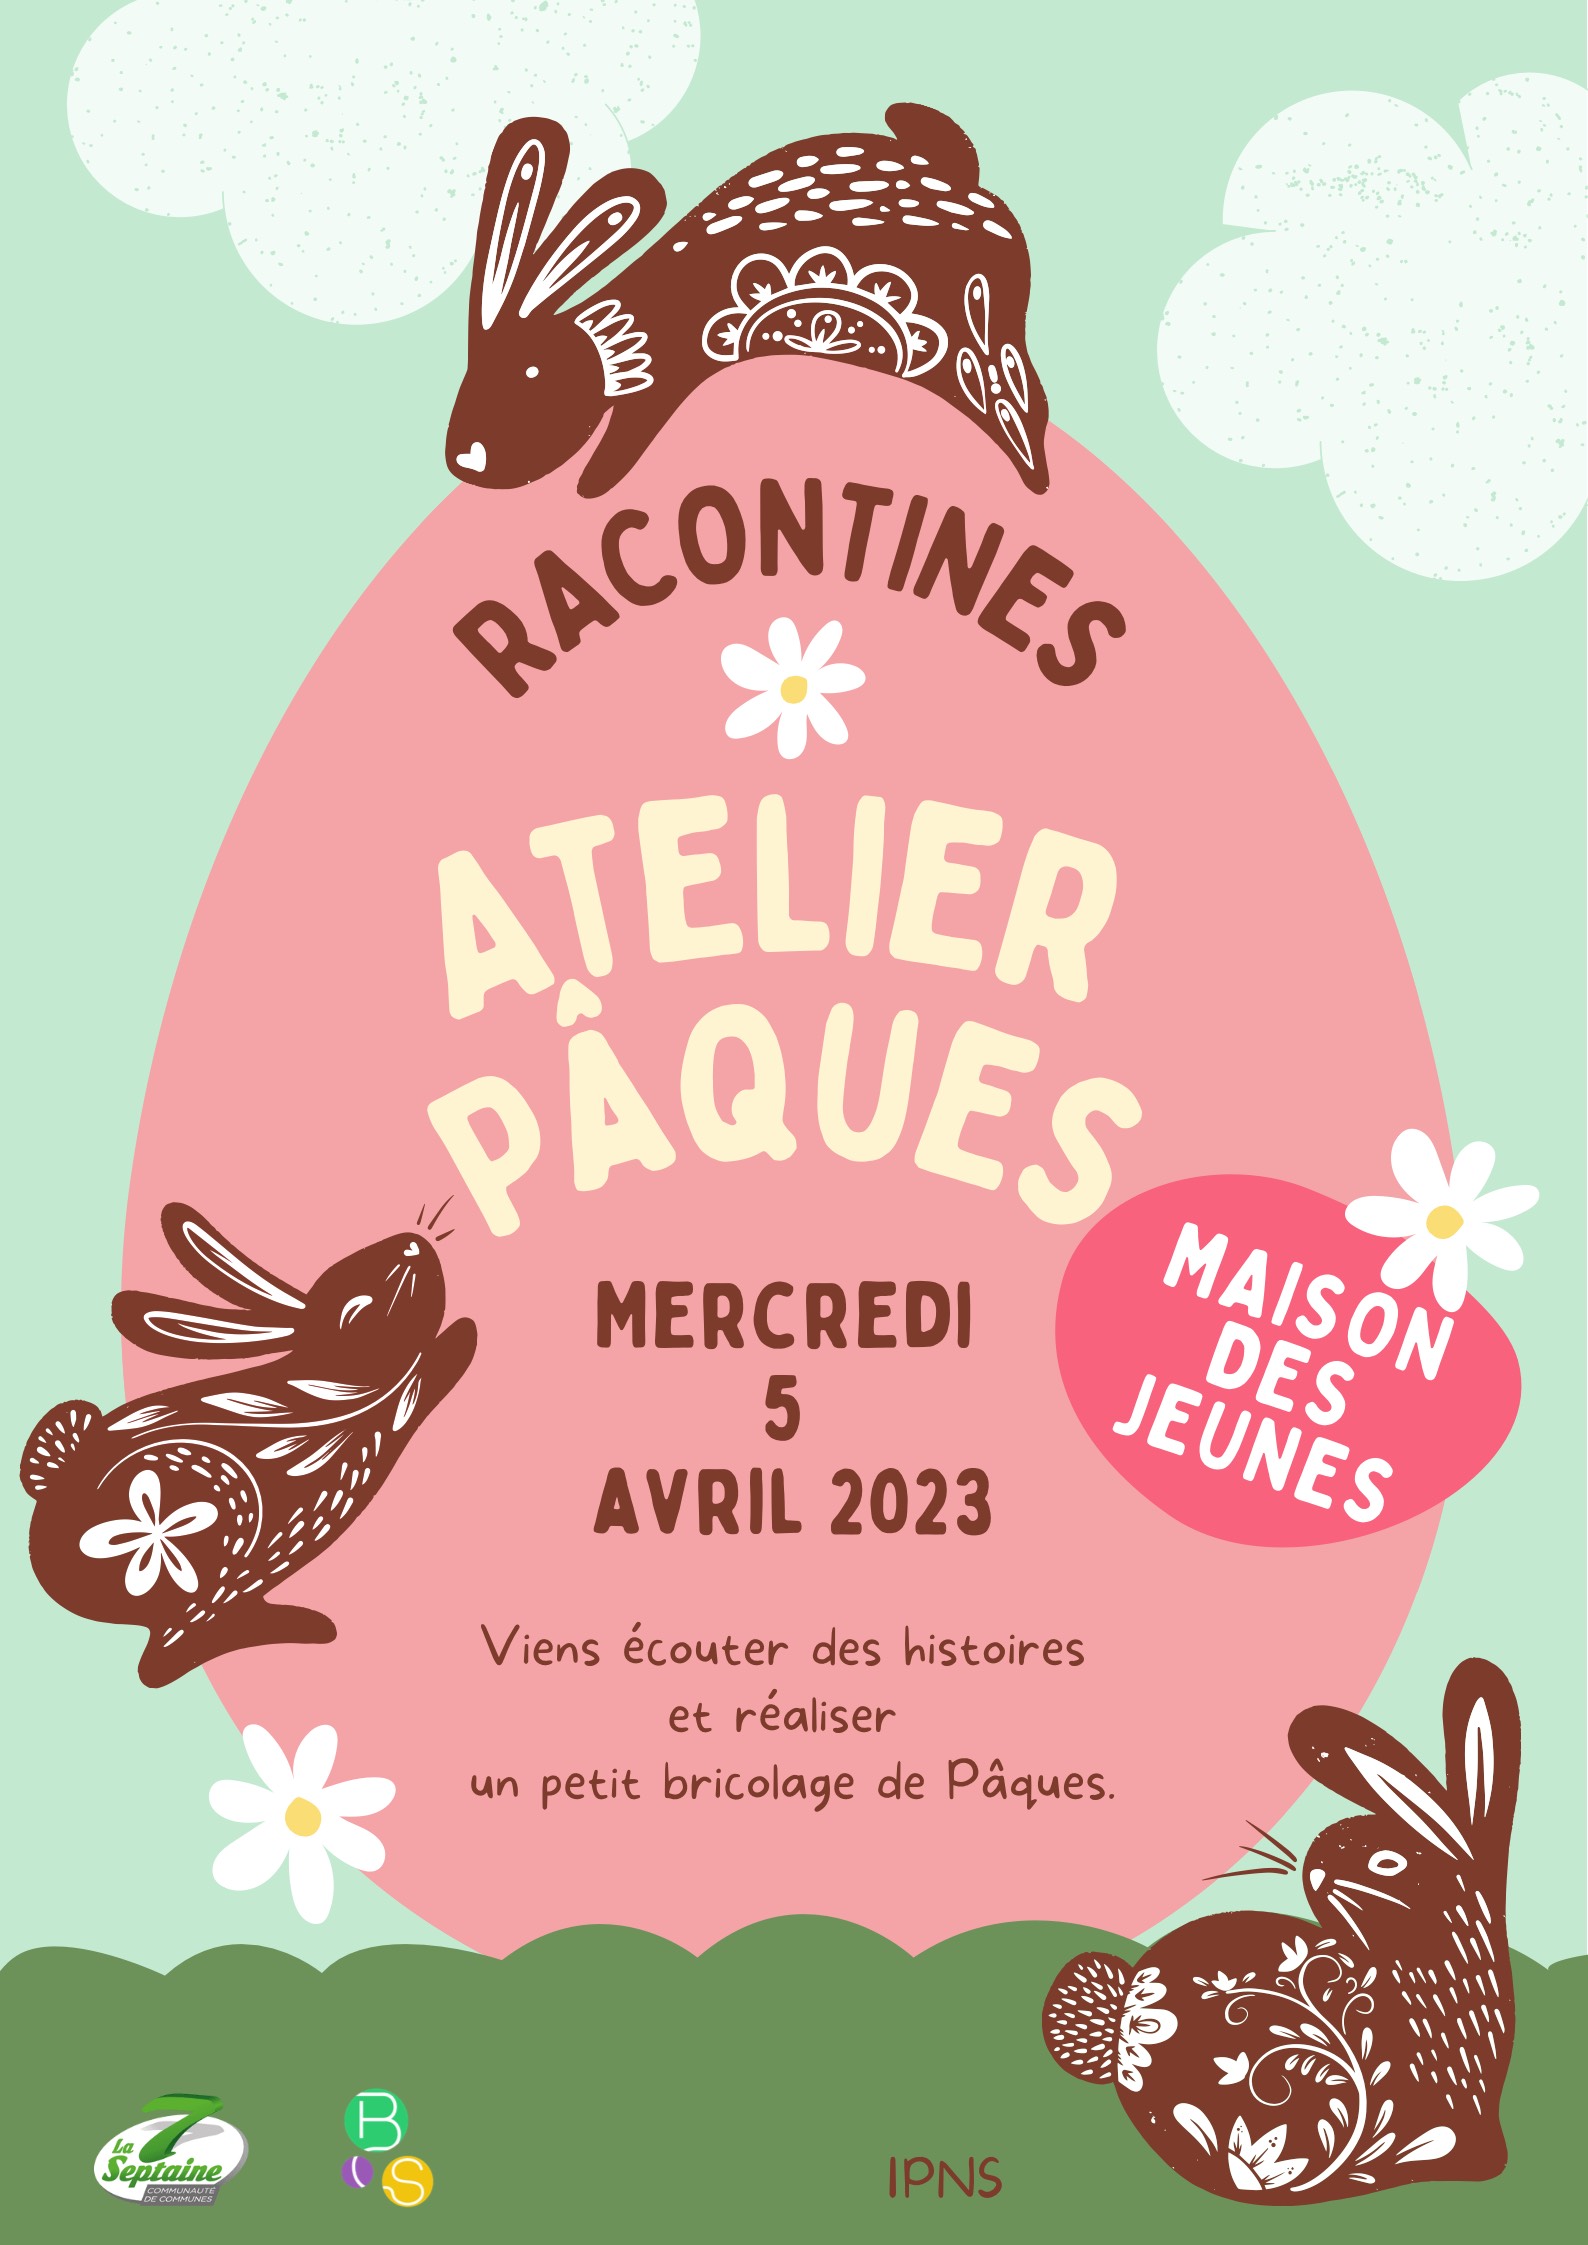 Racontines - Atelier Pâques @ Maison des Jeunes